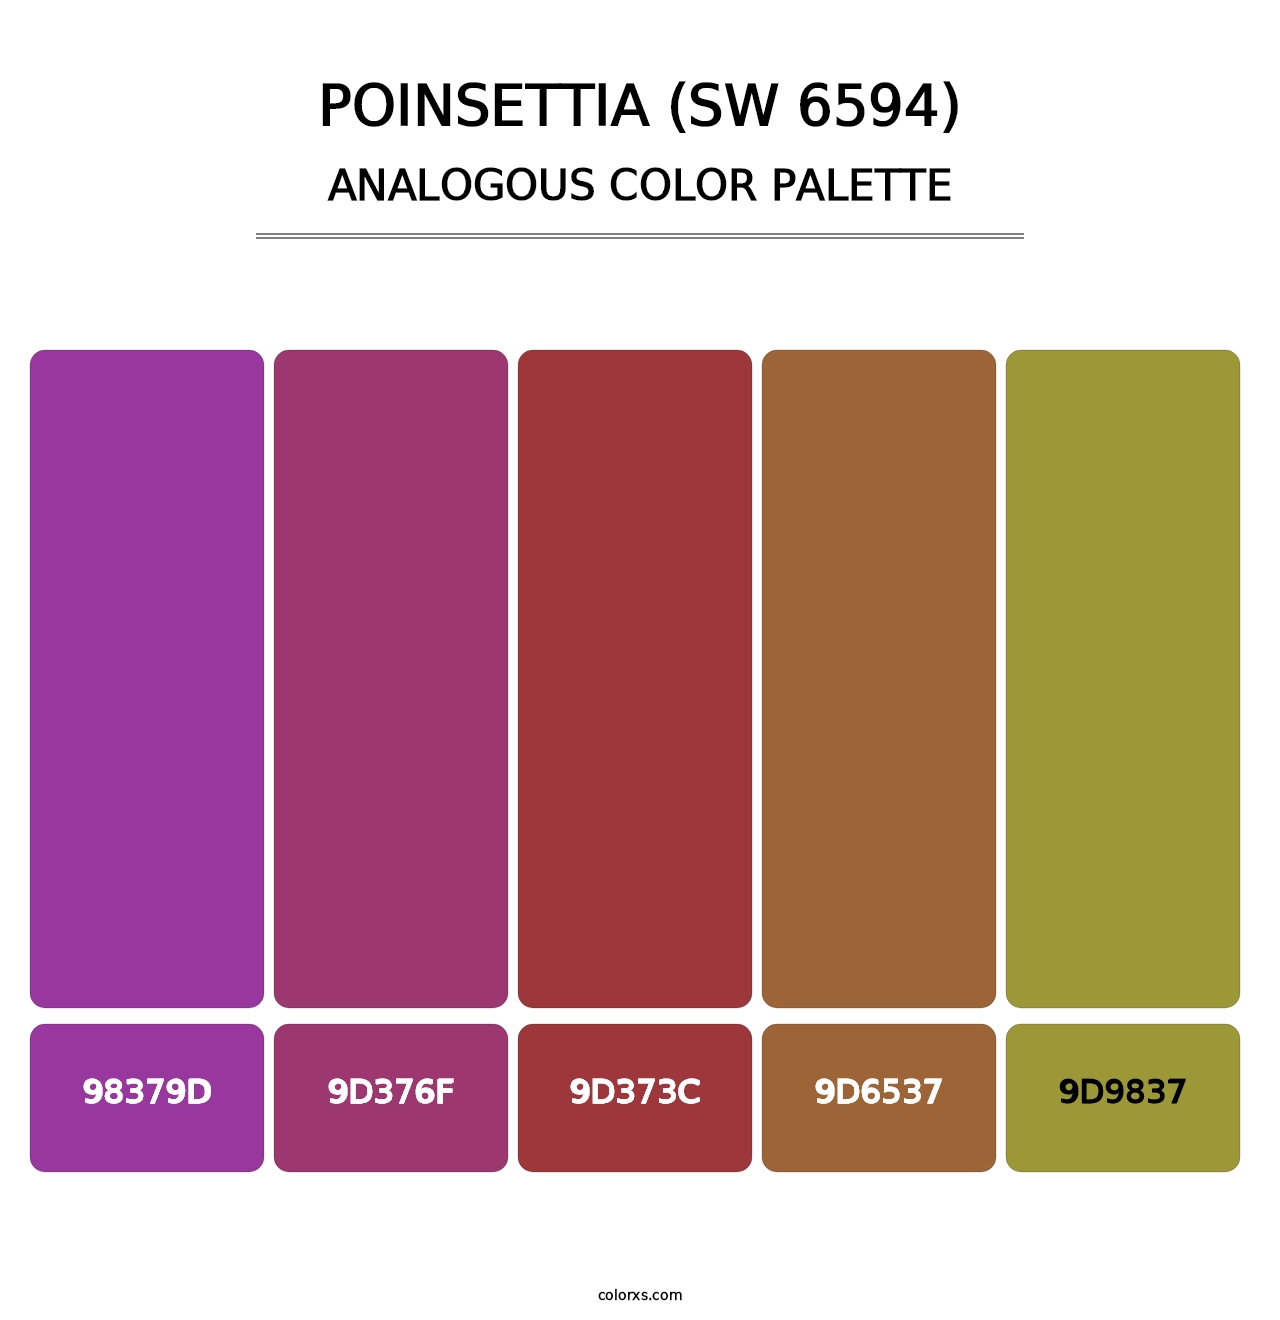 Poinsettia (SW 6594) - Analogous Color Palette